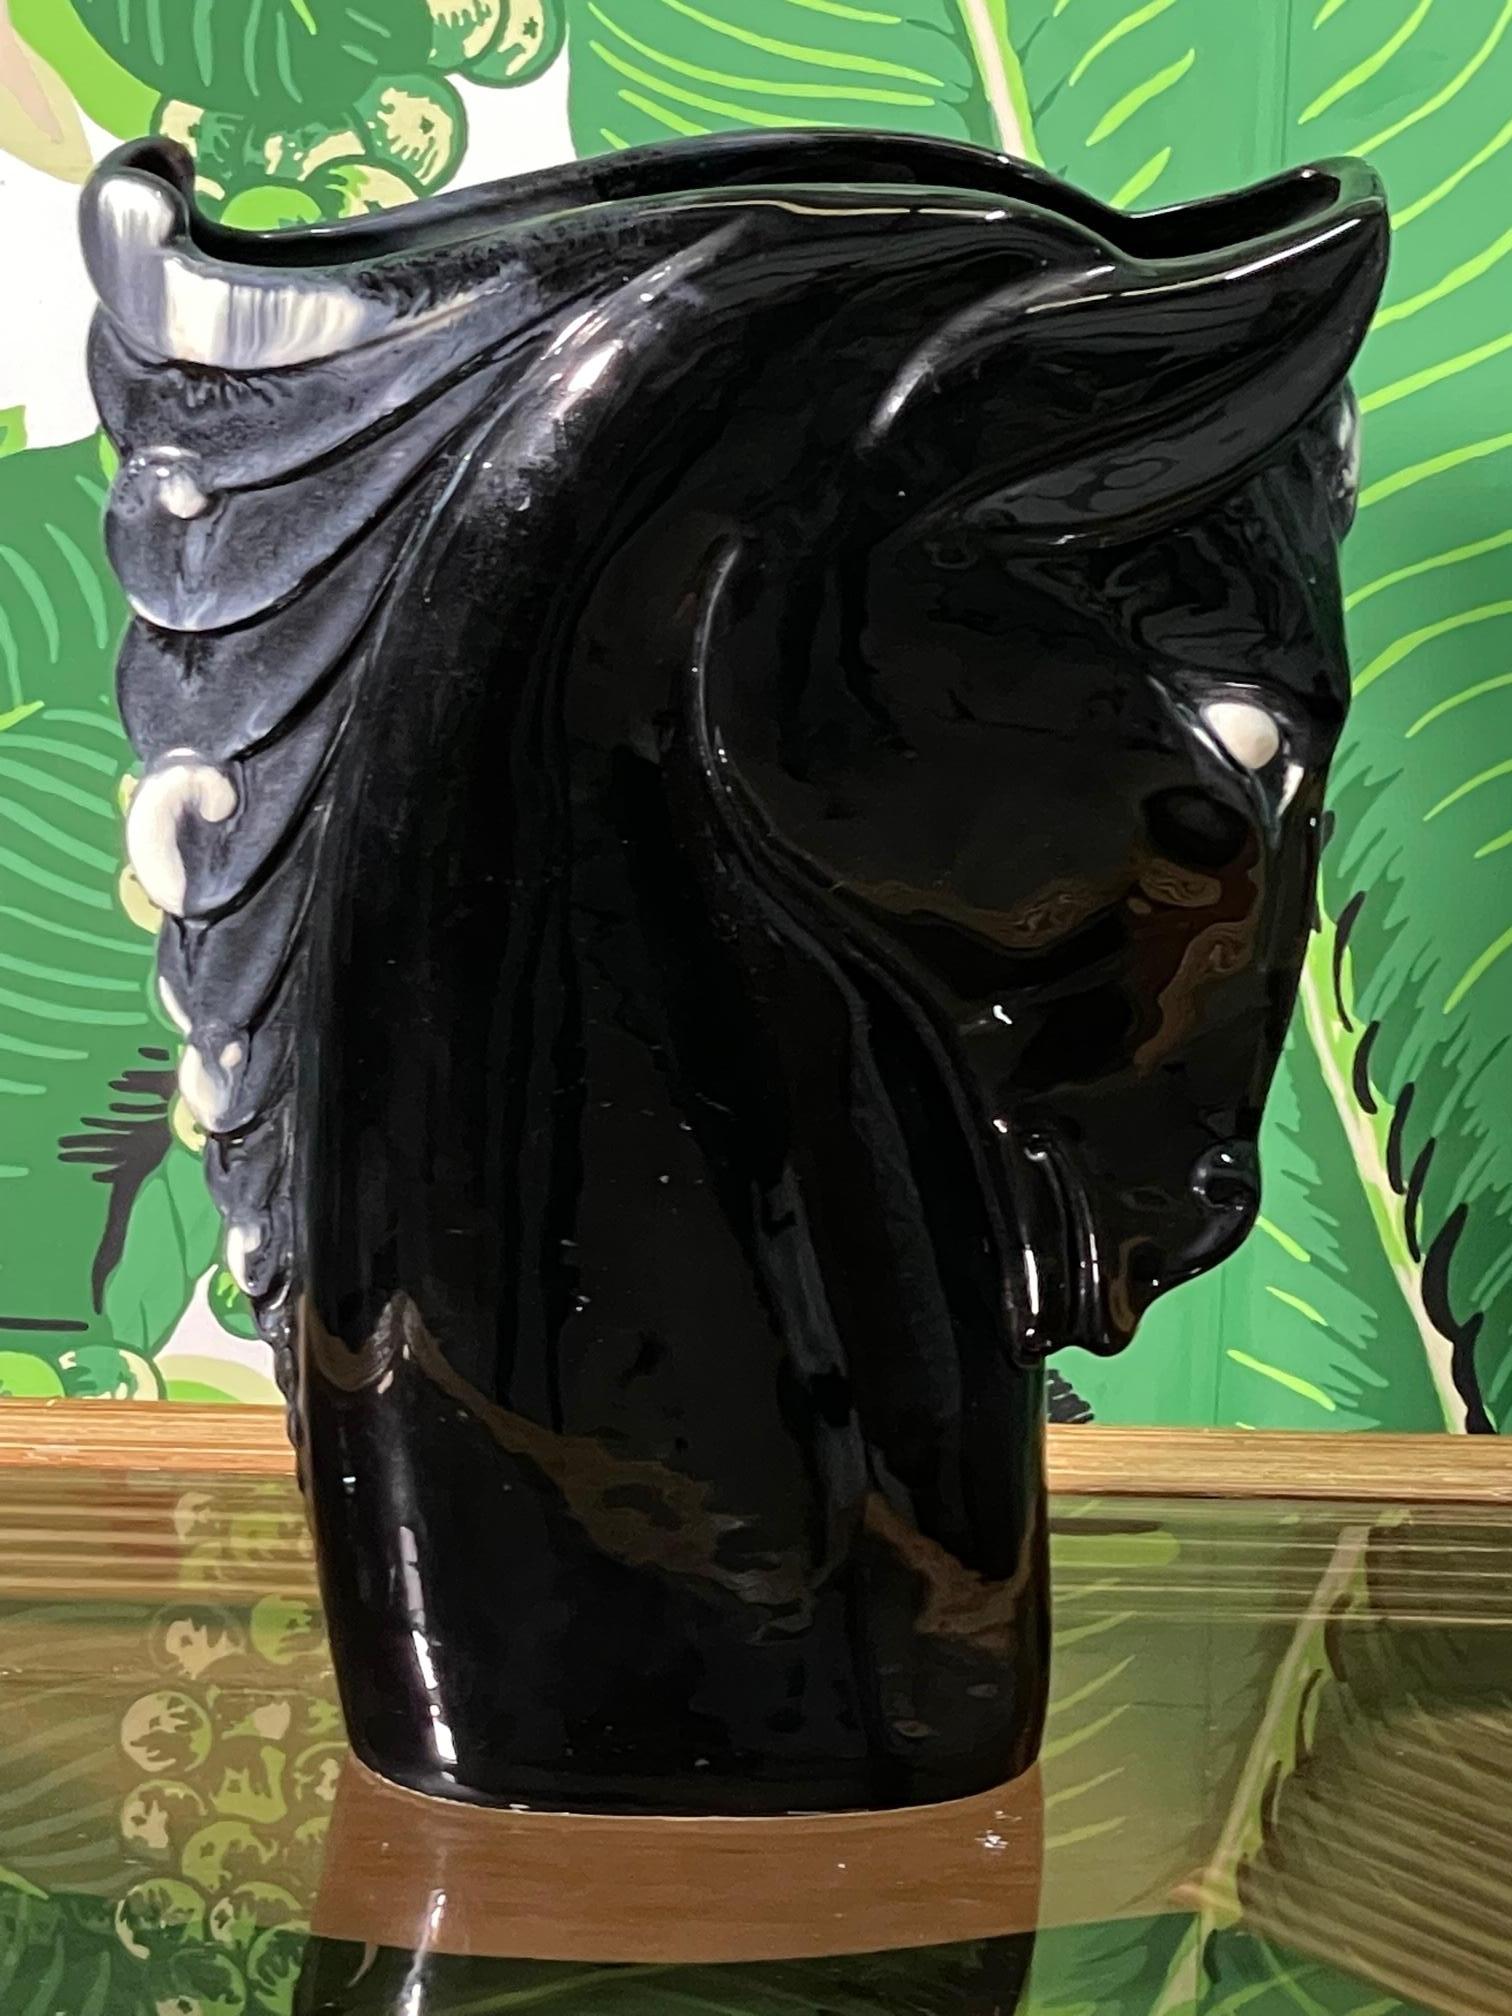 Moderne Pferdekopfvase aus Keramik von Royal Hickman in schwarzer Glanzoptik mit hellen Akzenten. Guter Zustand mit kleinen altersbedingten Mängeln (siehe Fotos).
 
 